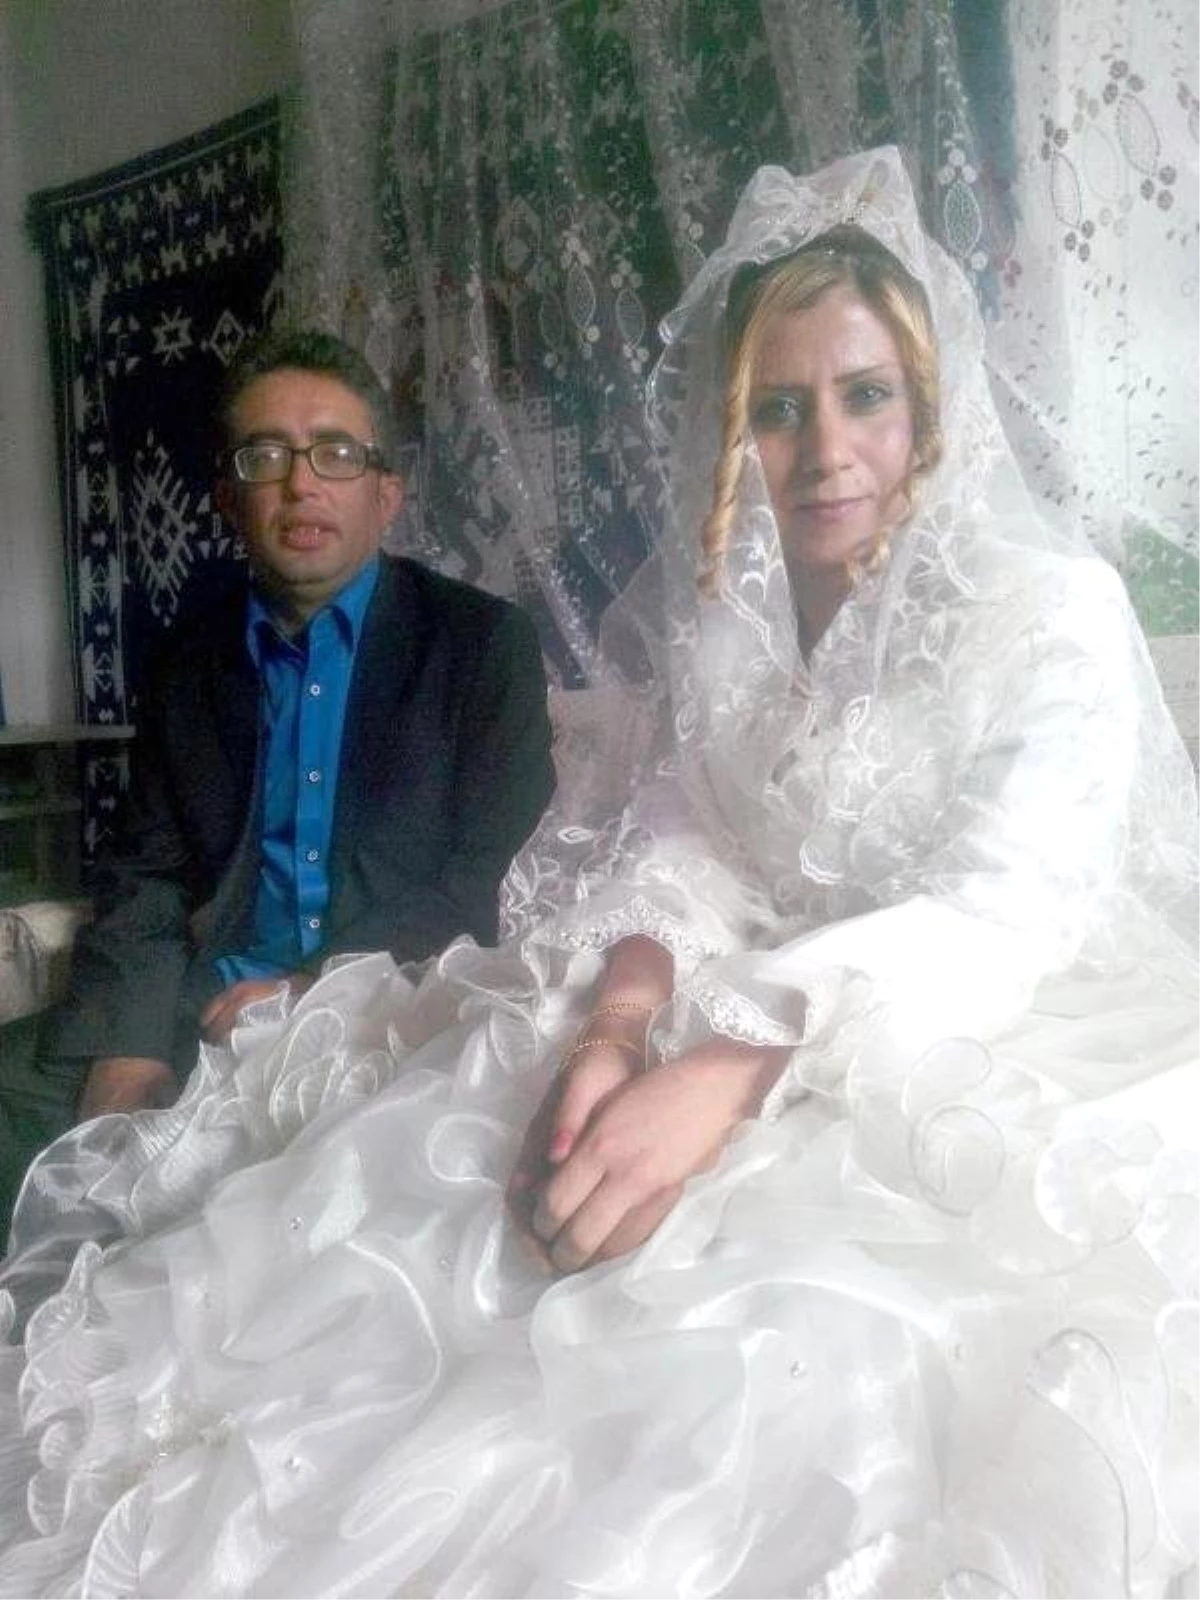 Suriyeli Gelin, Düğün Sabahı Altınları Alıp Kaçtı